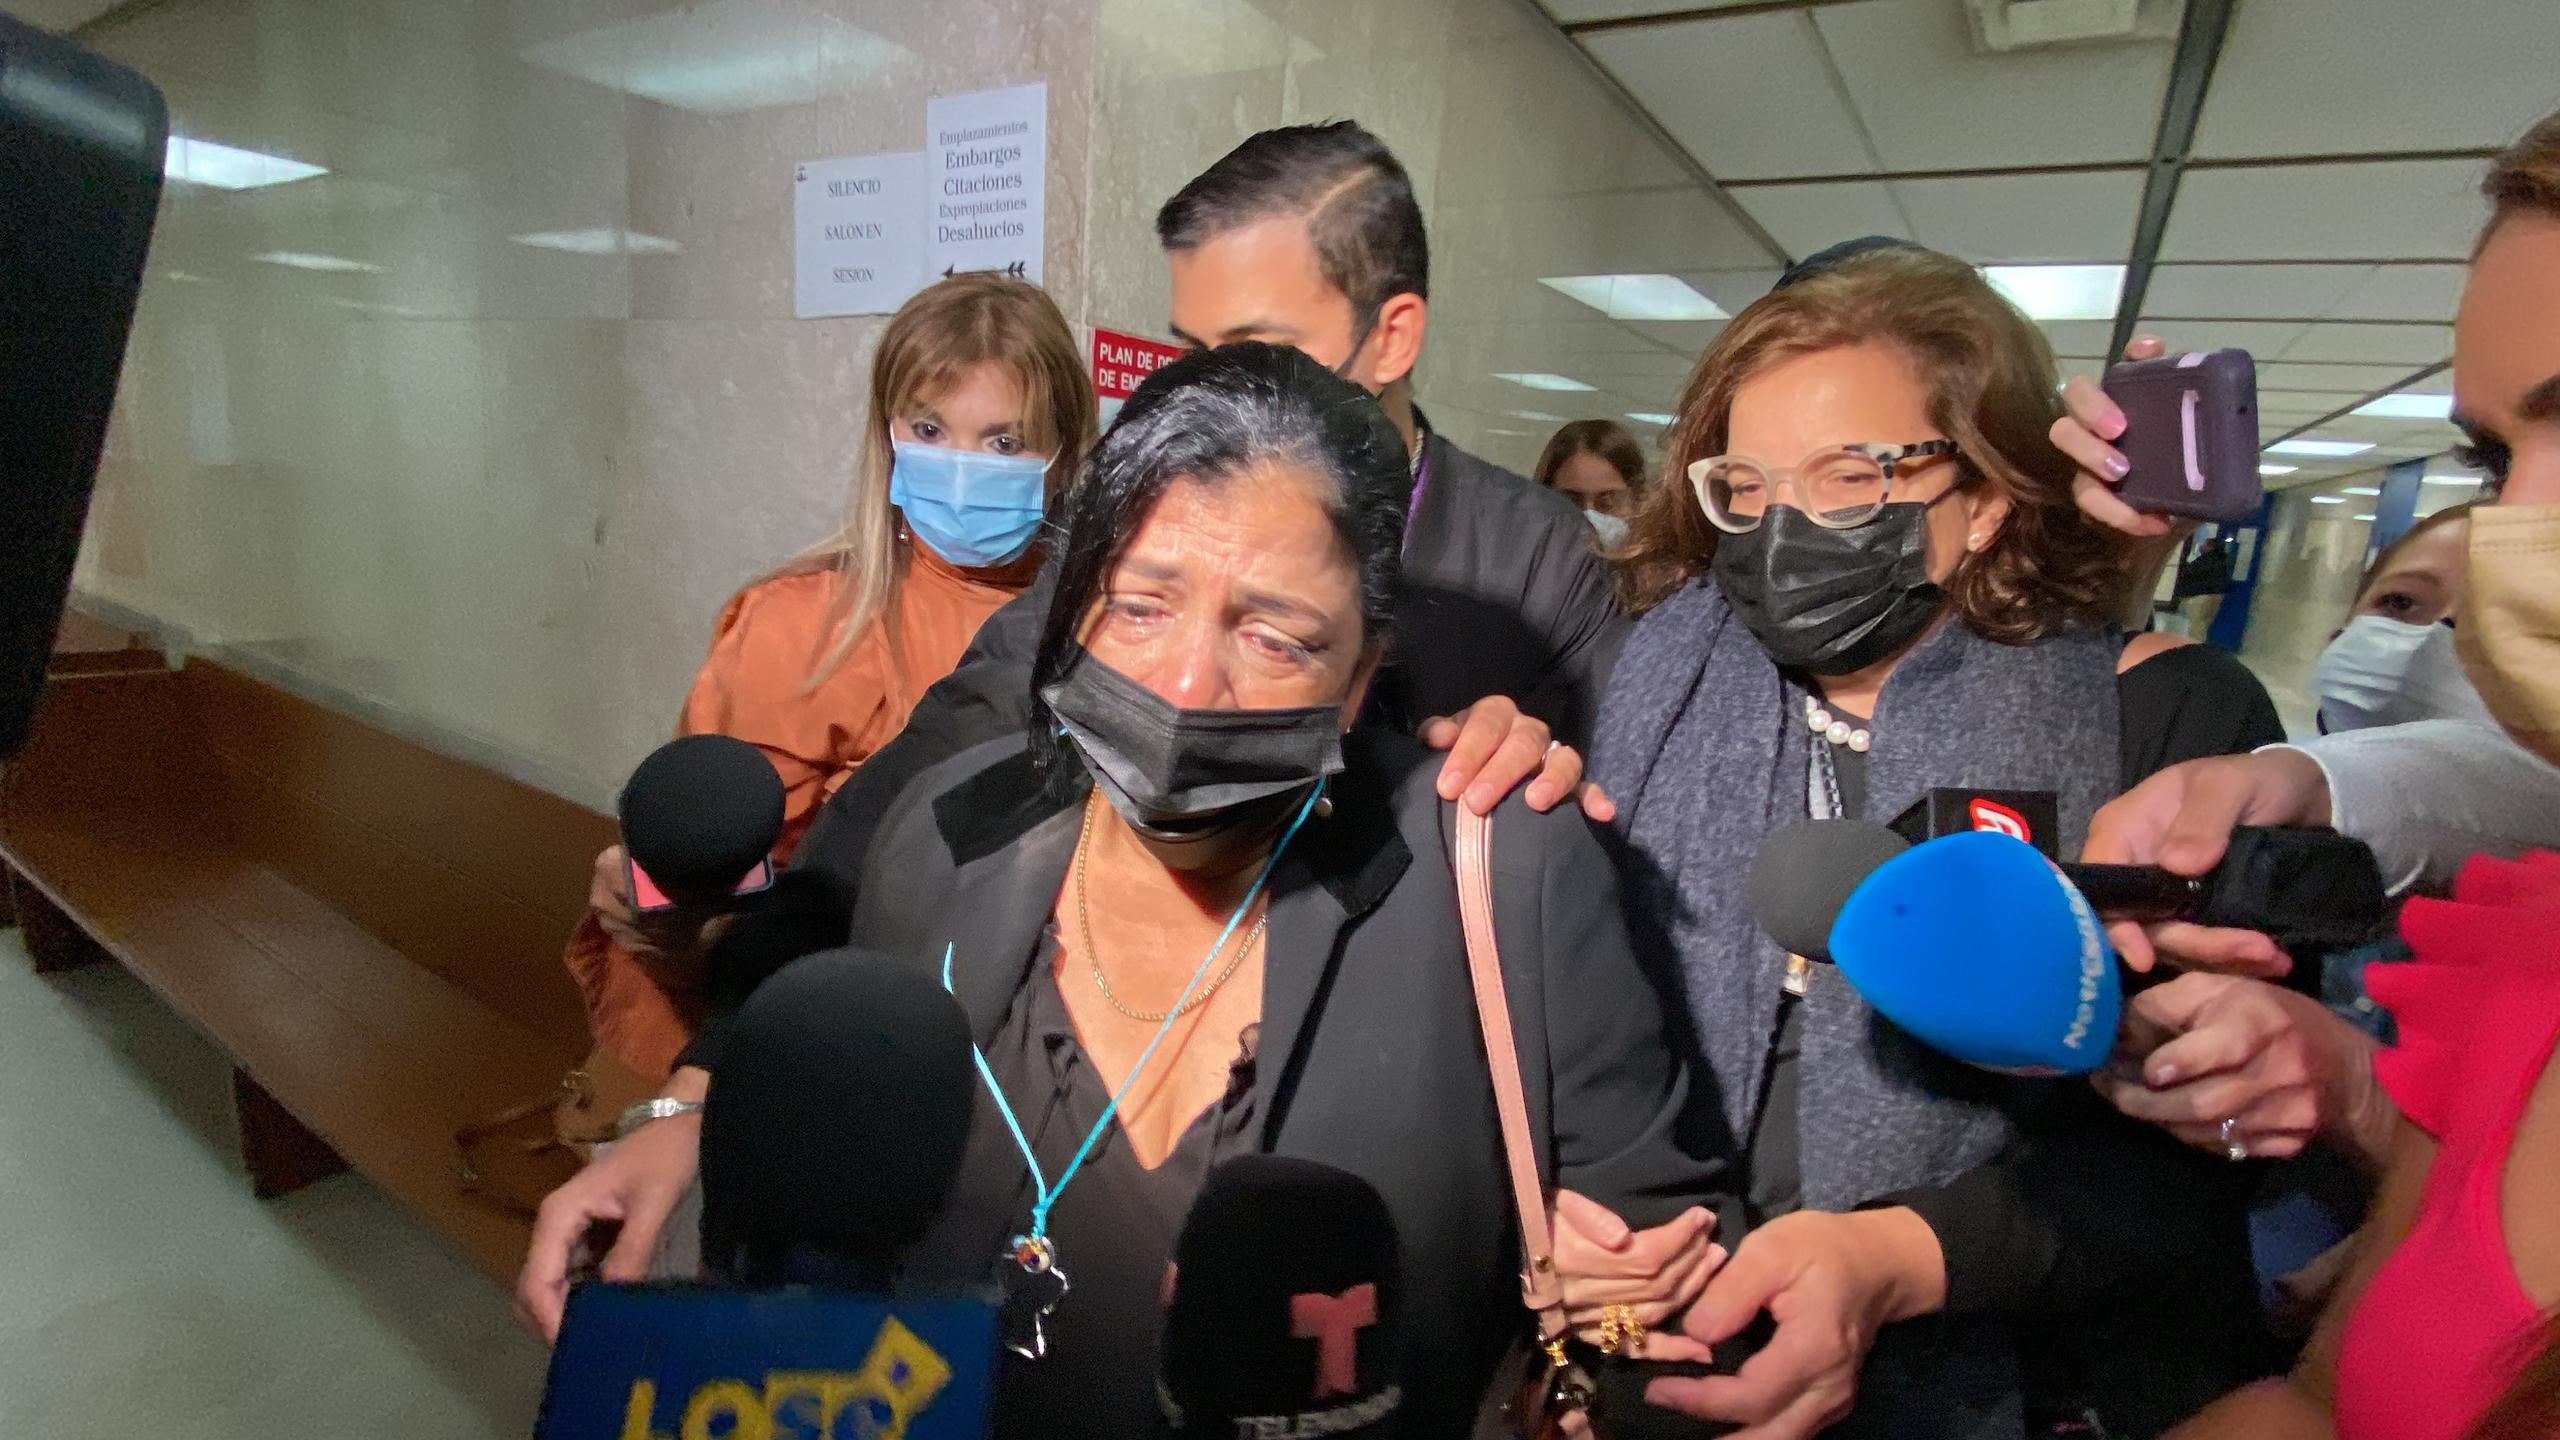 Carmen Rosa Santos lamentó la decisión de la jueza de suprimir evidencia en el caso contra la imputada de provocar el accidente que le costó la vida a su hijo.